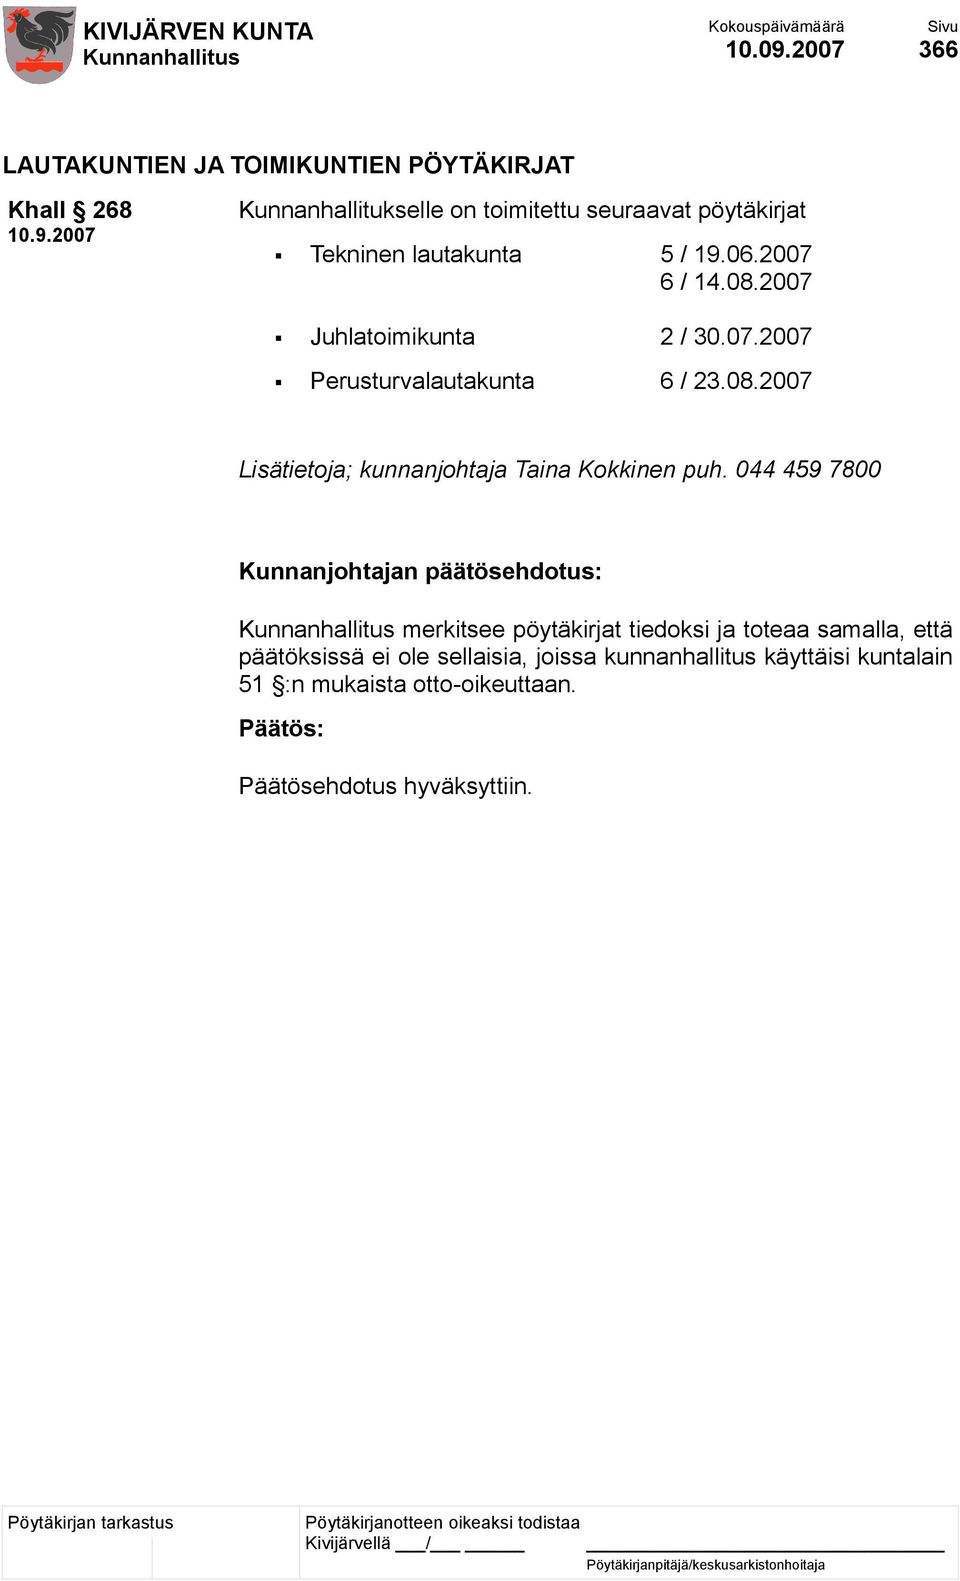 pöytäkirjat Tekninen lautakunta 5 / 19.06.2007 6 / 14.08.2007 Juhlatoimikunta 2 / 30.07.2007 Perusturvalautakunta 6 / 23.